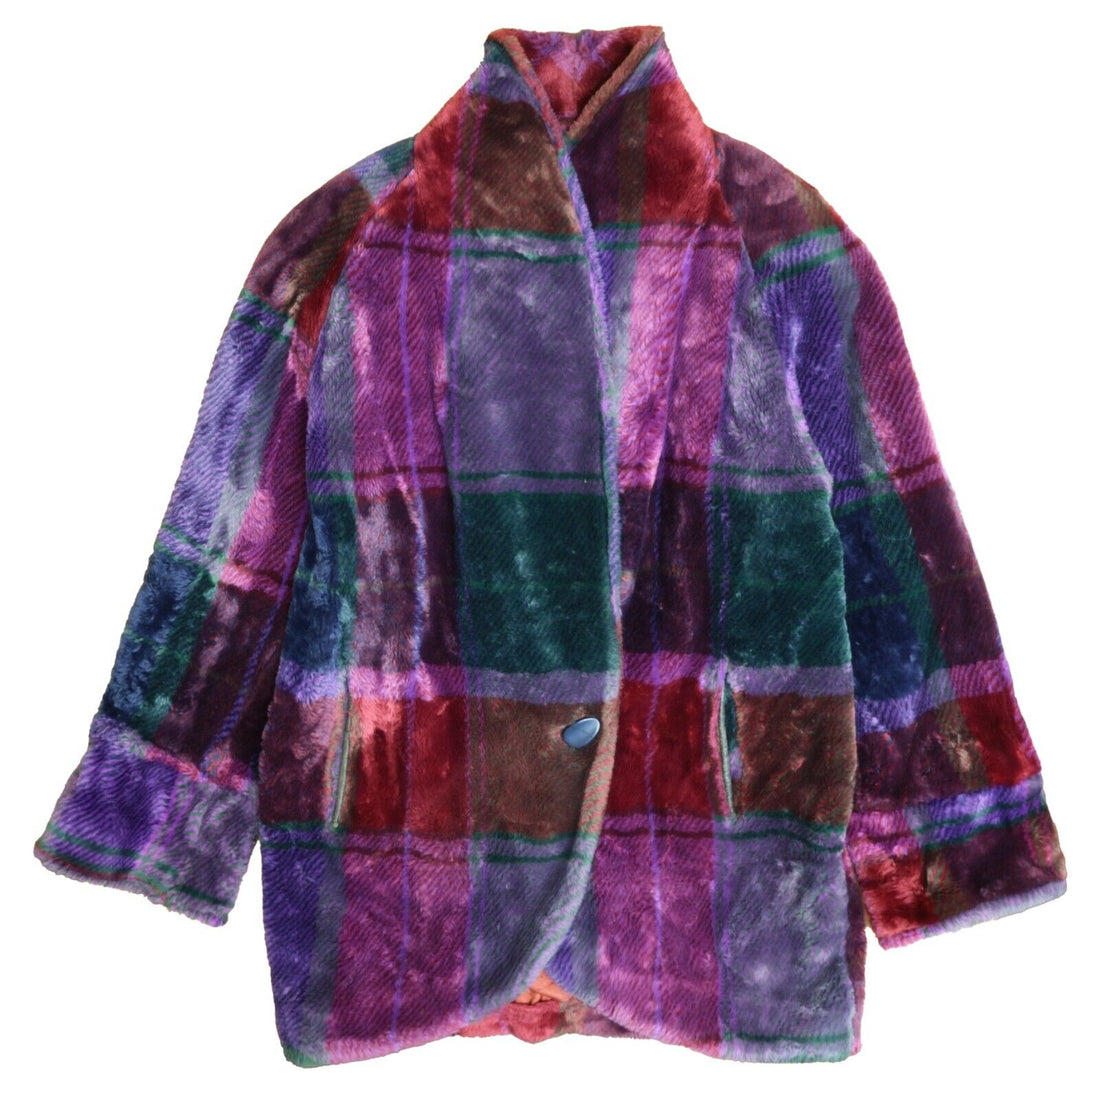 Vintage Donnybrook Fur Coat Jacket Women Size Large Purple Plaid